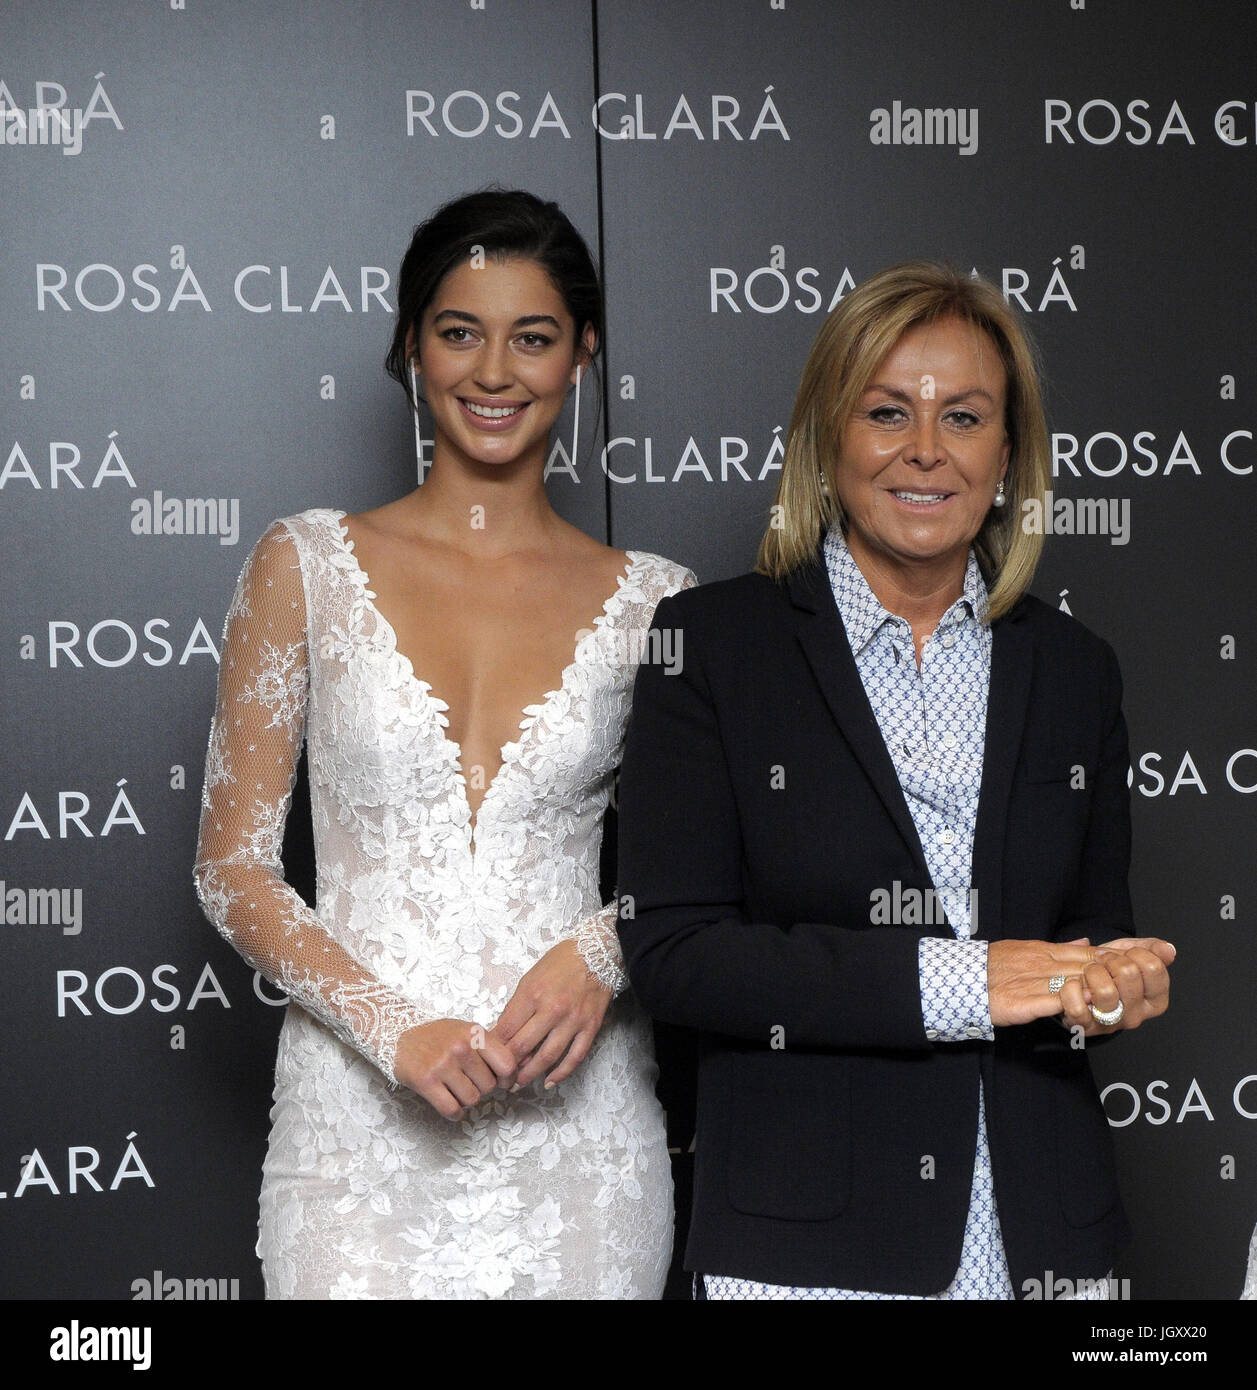 24 aprile 2017, Barcelona, Spagna. Mariana Downing. La marca di abiti da sposa  Rosa Clarà organizzato il raccordo Foto stock - Alamy